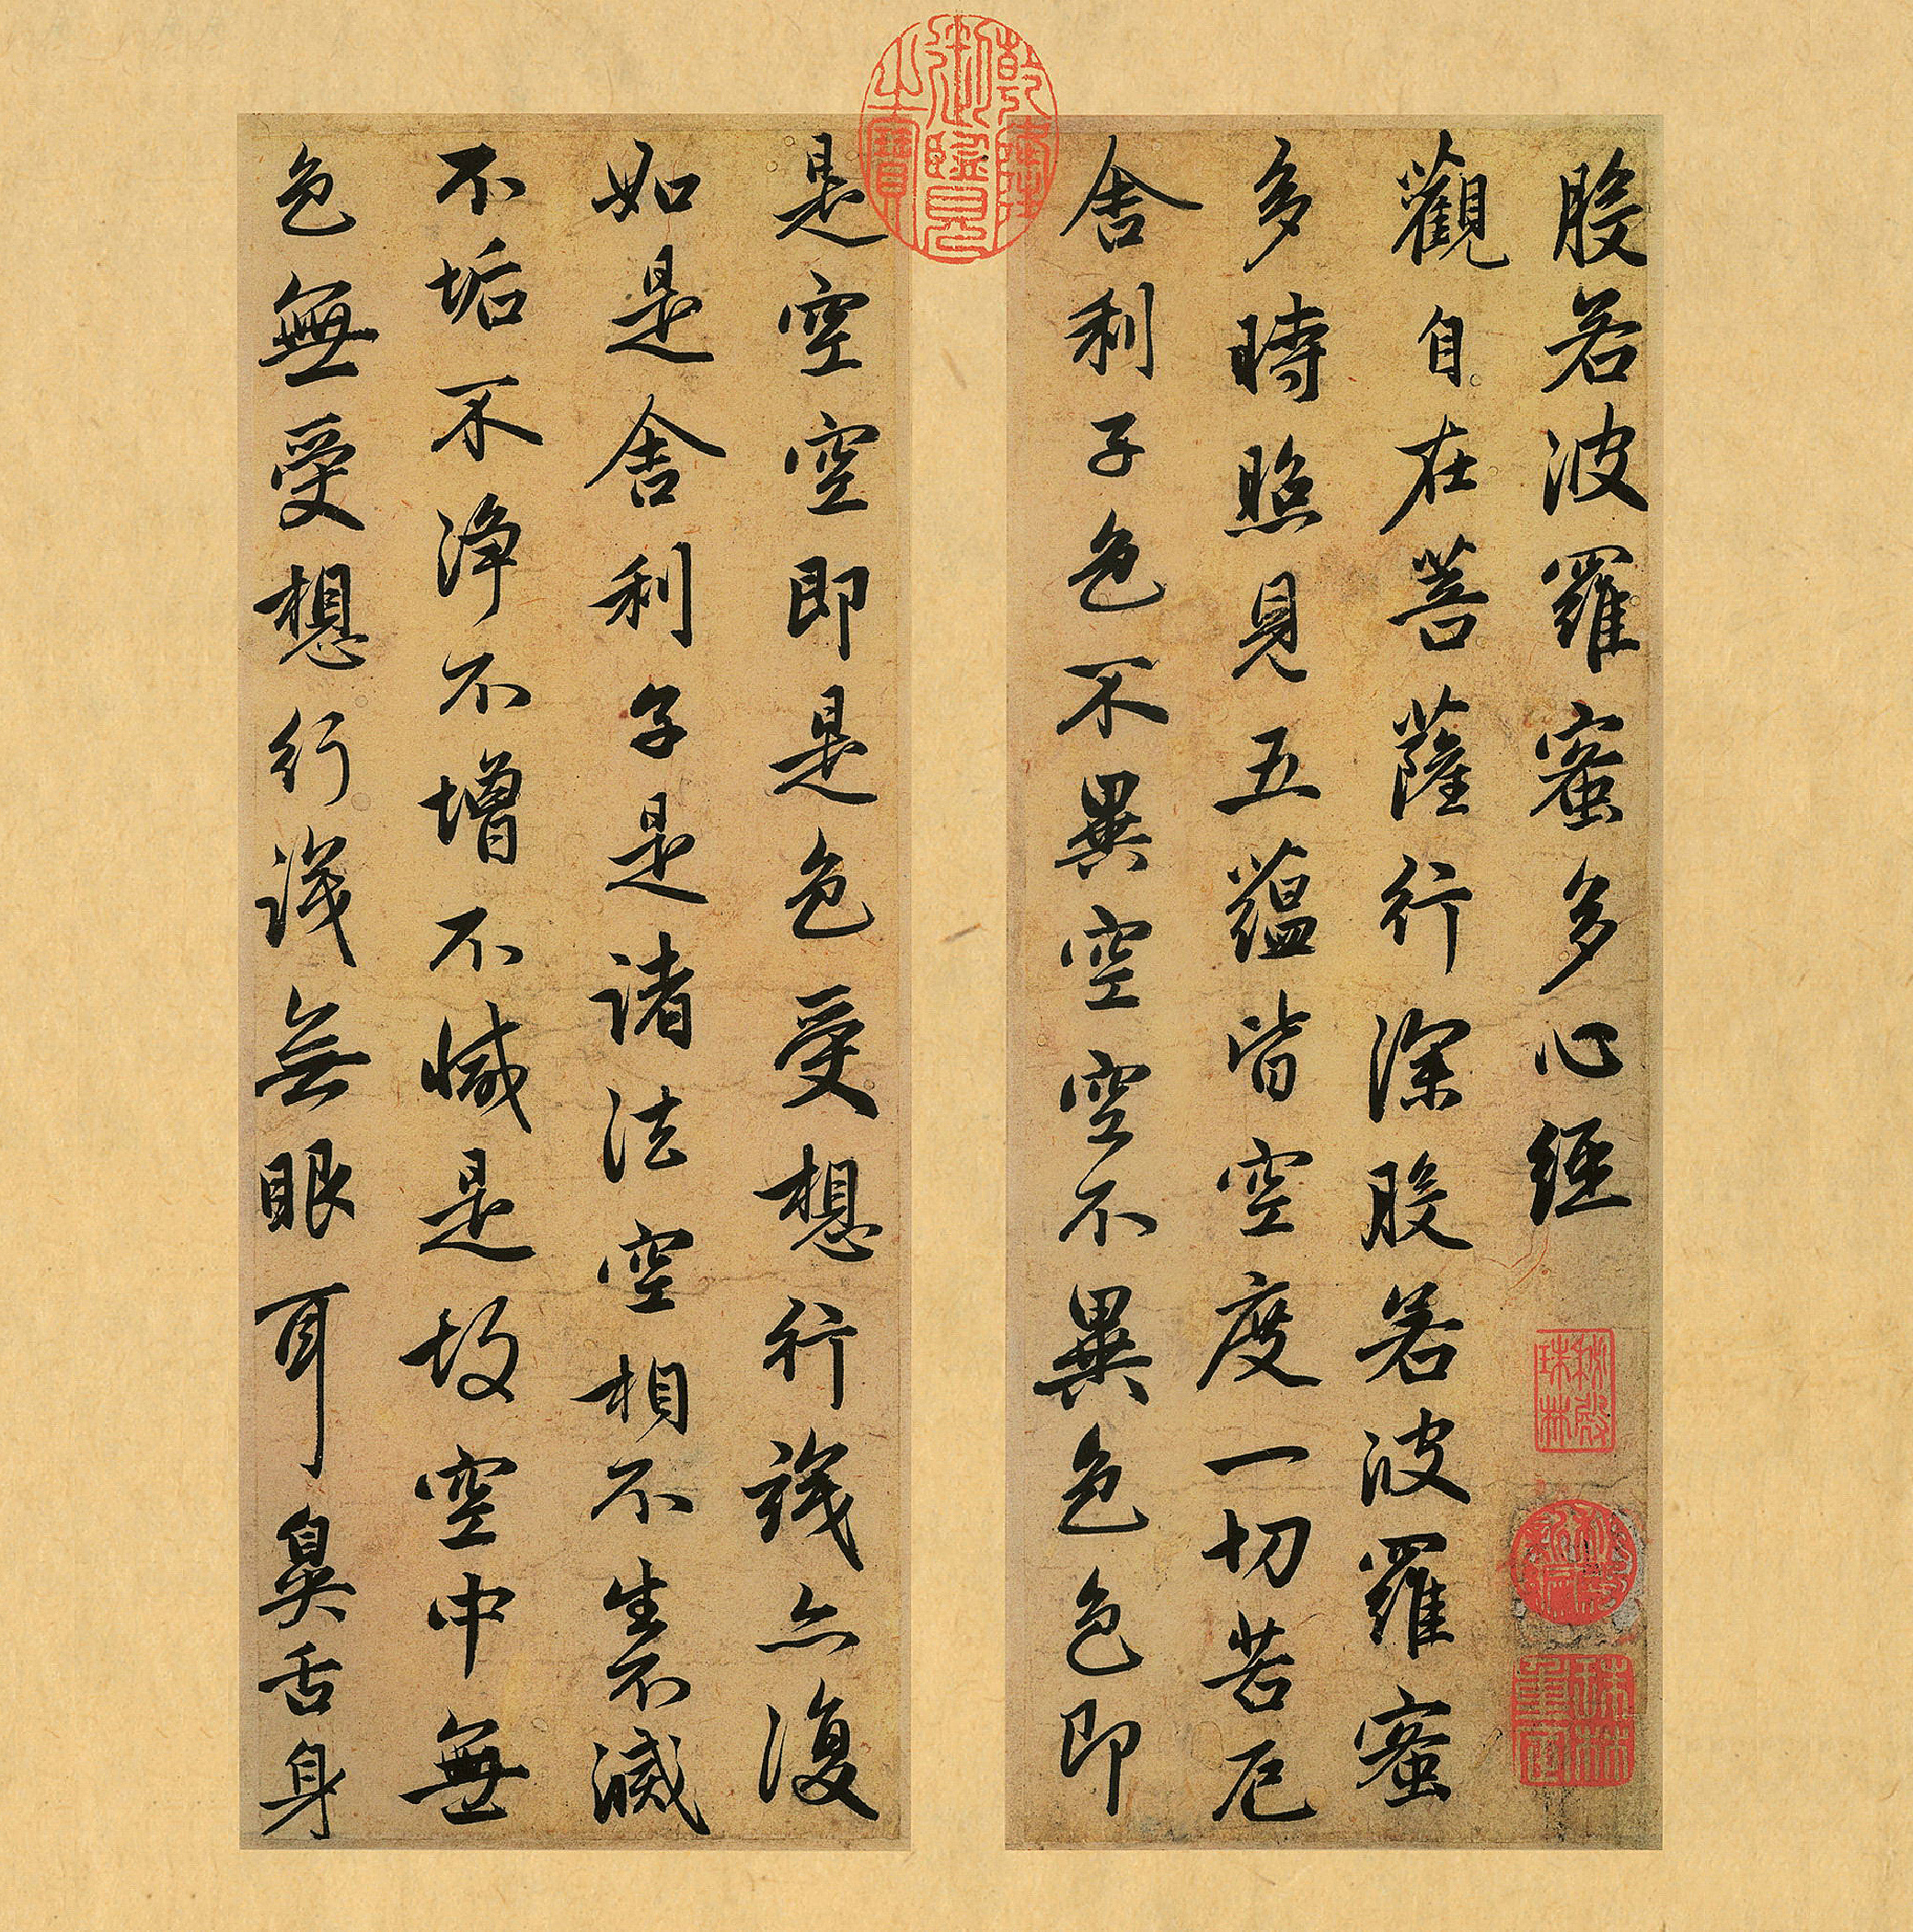 赵孟頫行书《心经册》,在写经史上是一个创例